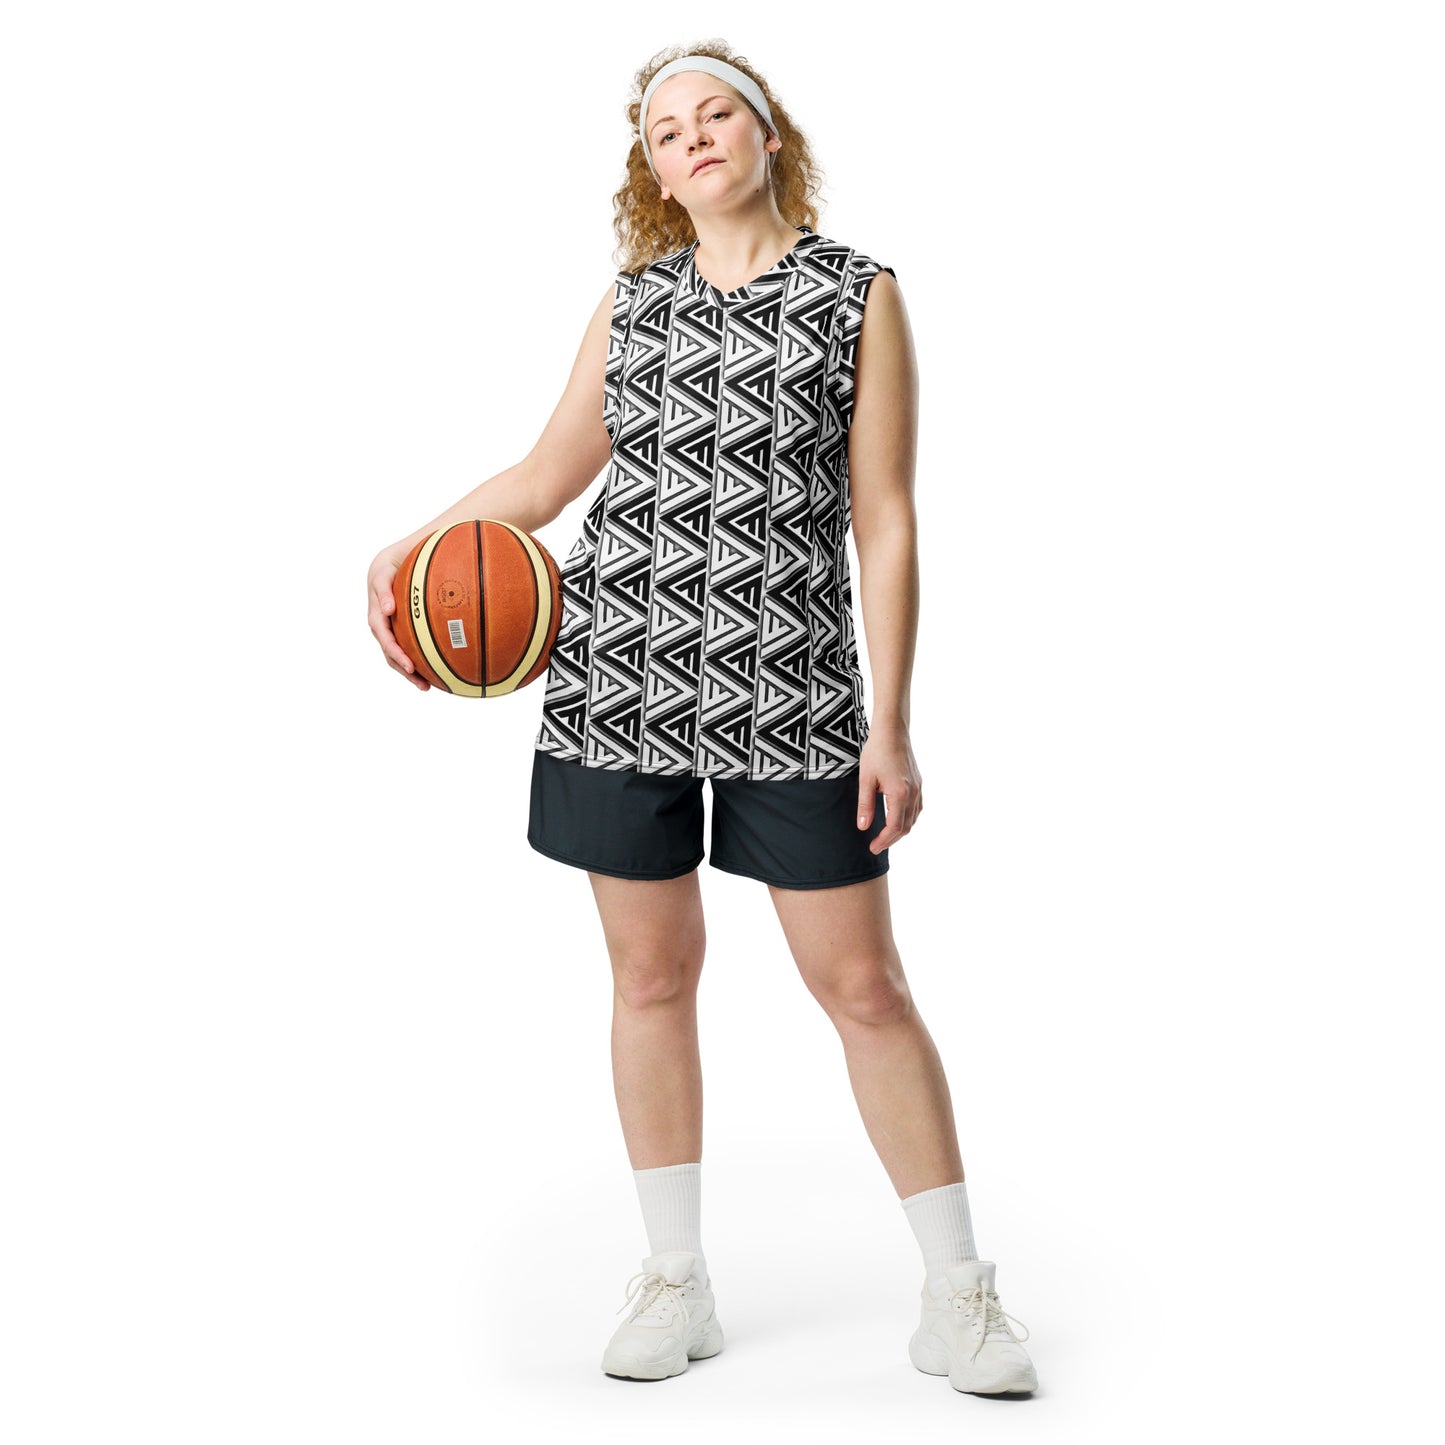 FV Recycled Zebra unisex basketball jersey